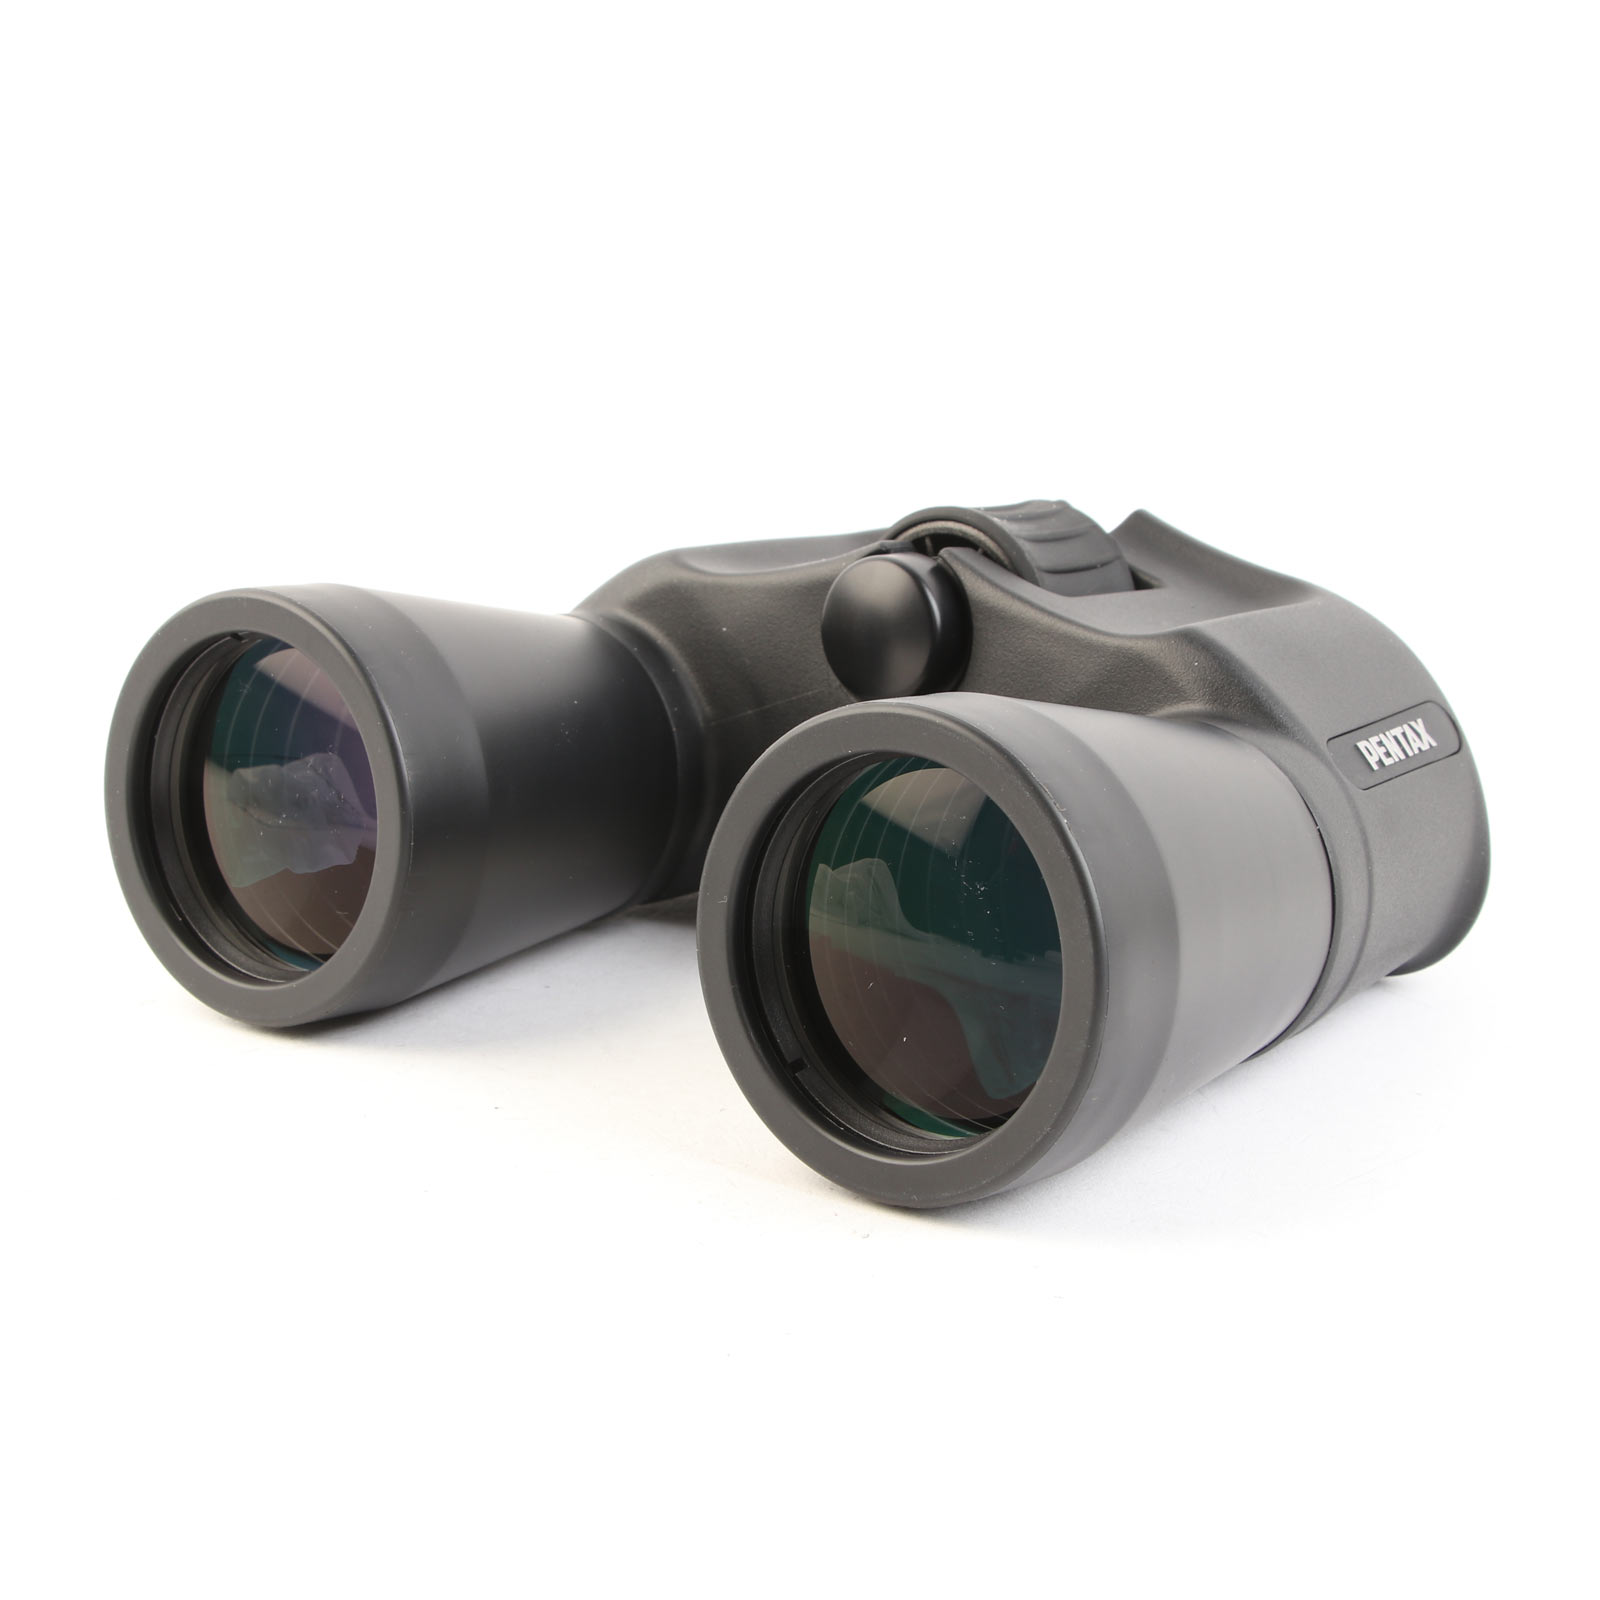 USED Pentax Jupiter 16x50 Binoculars